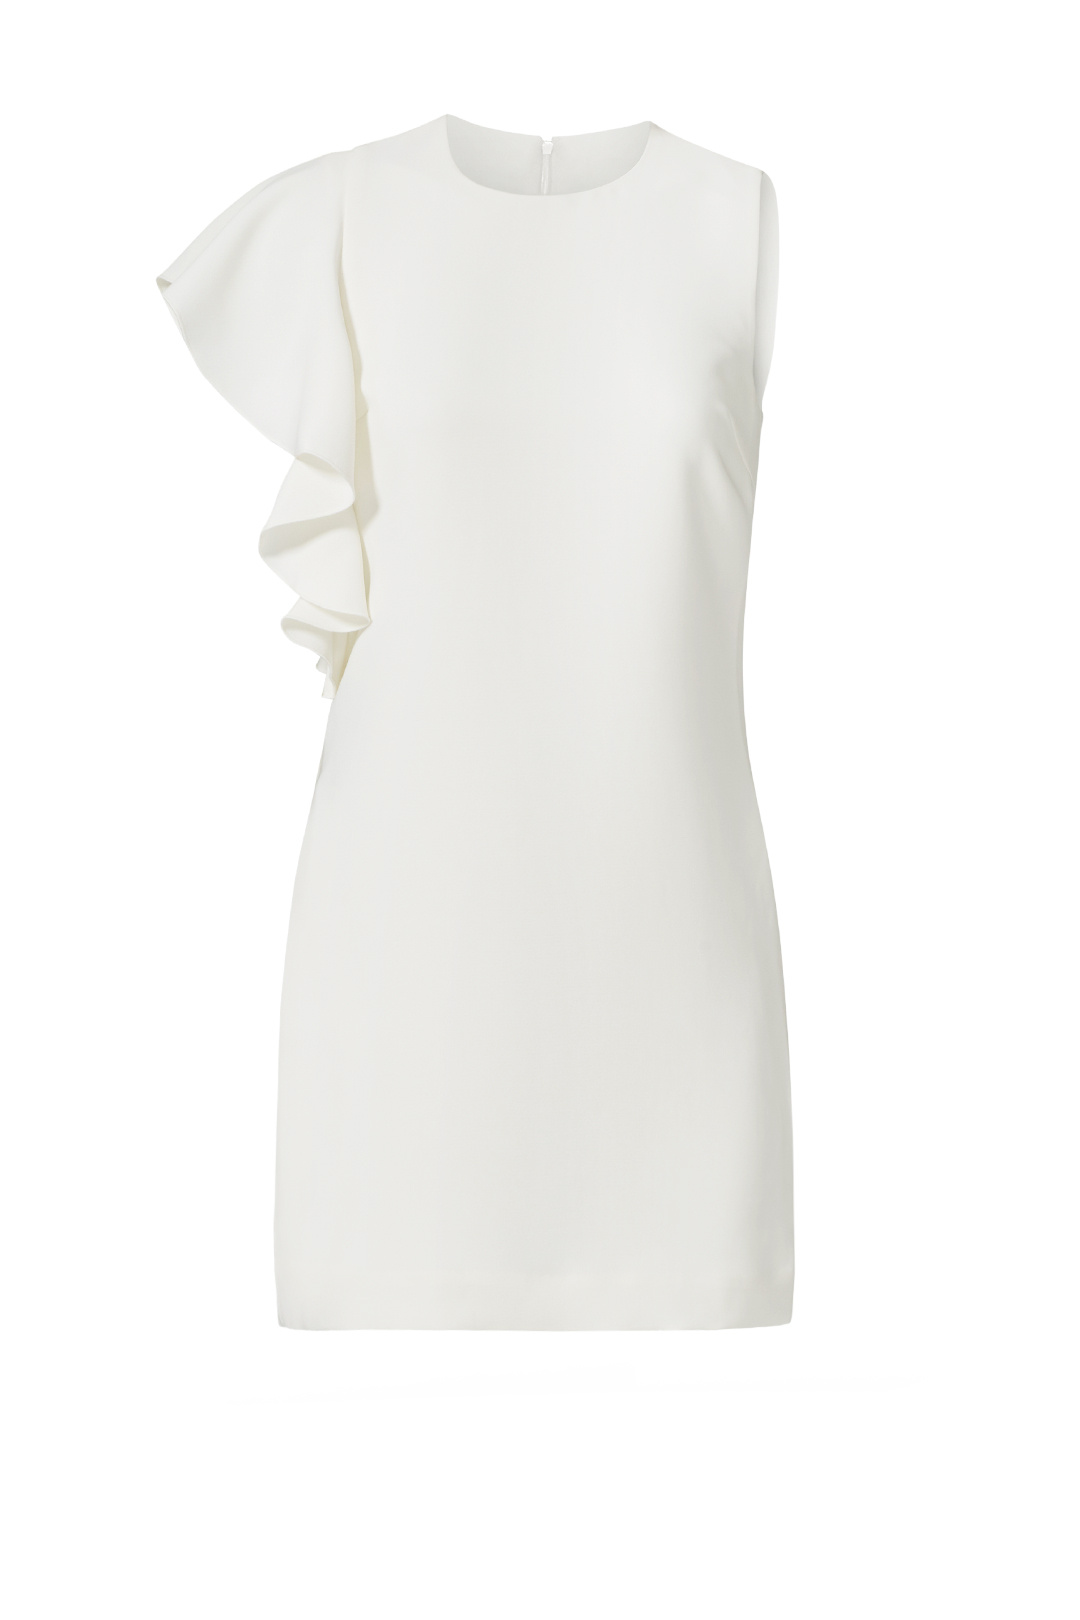 White Ruffle Dress.jpg